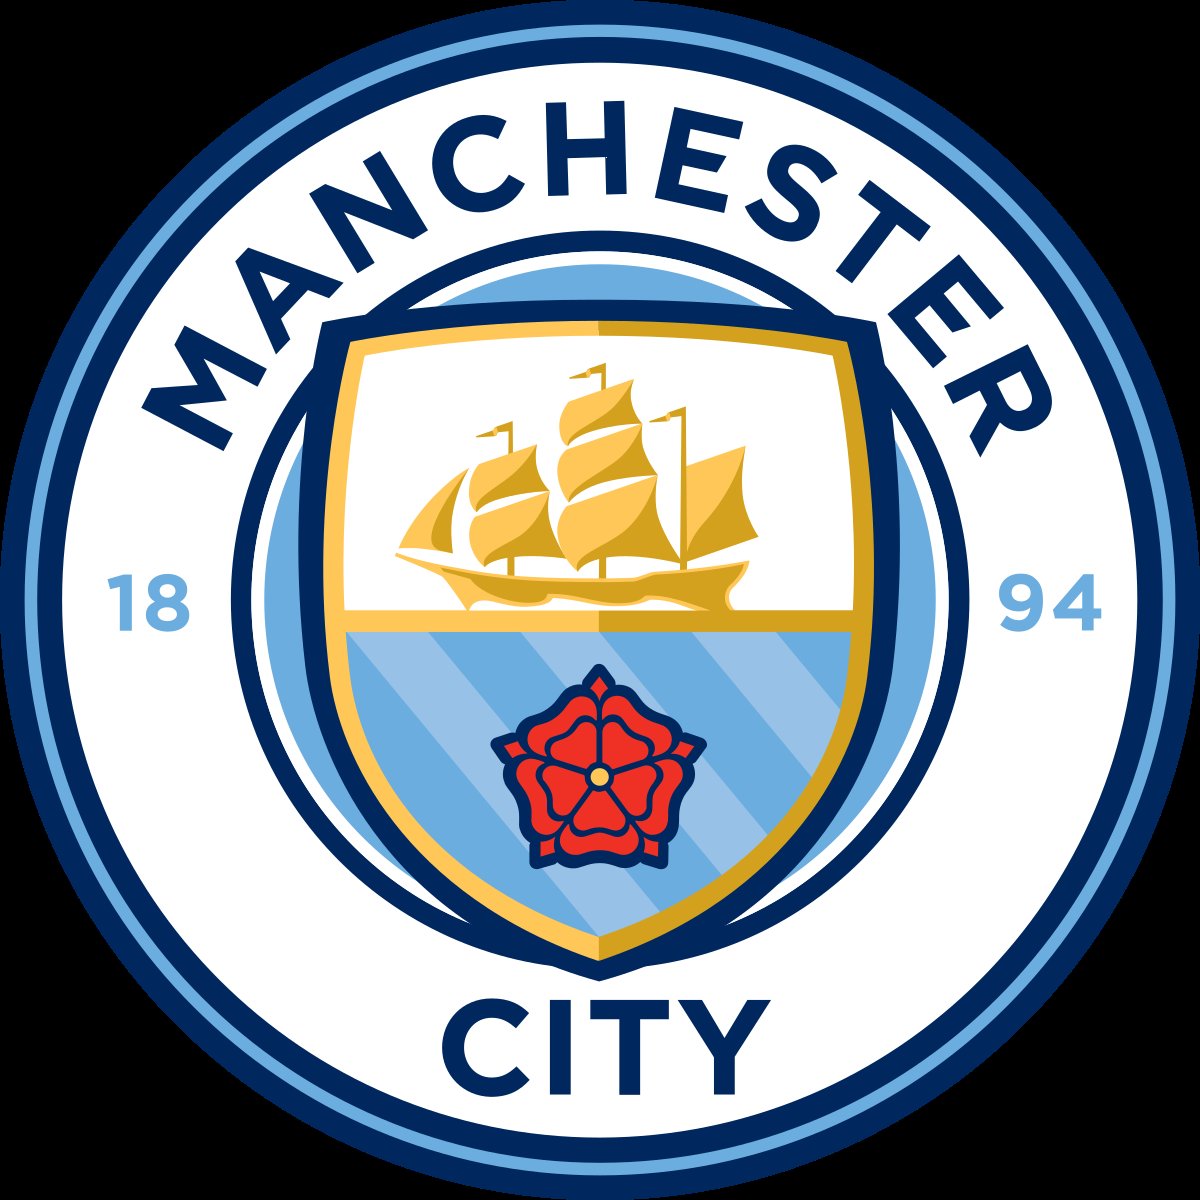 La construction de ce canal génère un sentiment de fierté et de supériorité chez les mancuniens à l'egard des scousers (Liverpool).Ce canal est une telle fierté que le bateau figure sur le logo de Manchester United, celui de Manchester City et celui de la ville de Manchester.